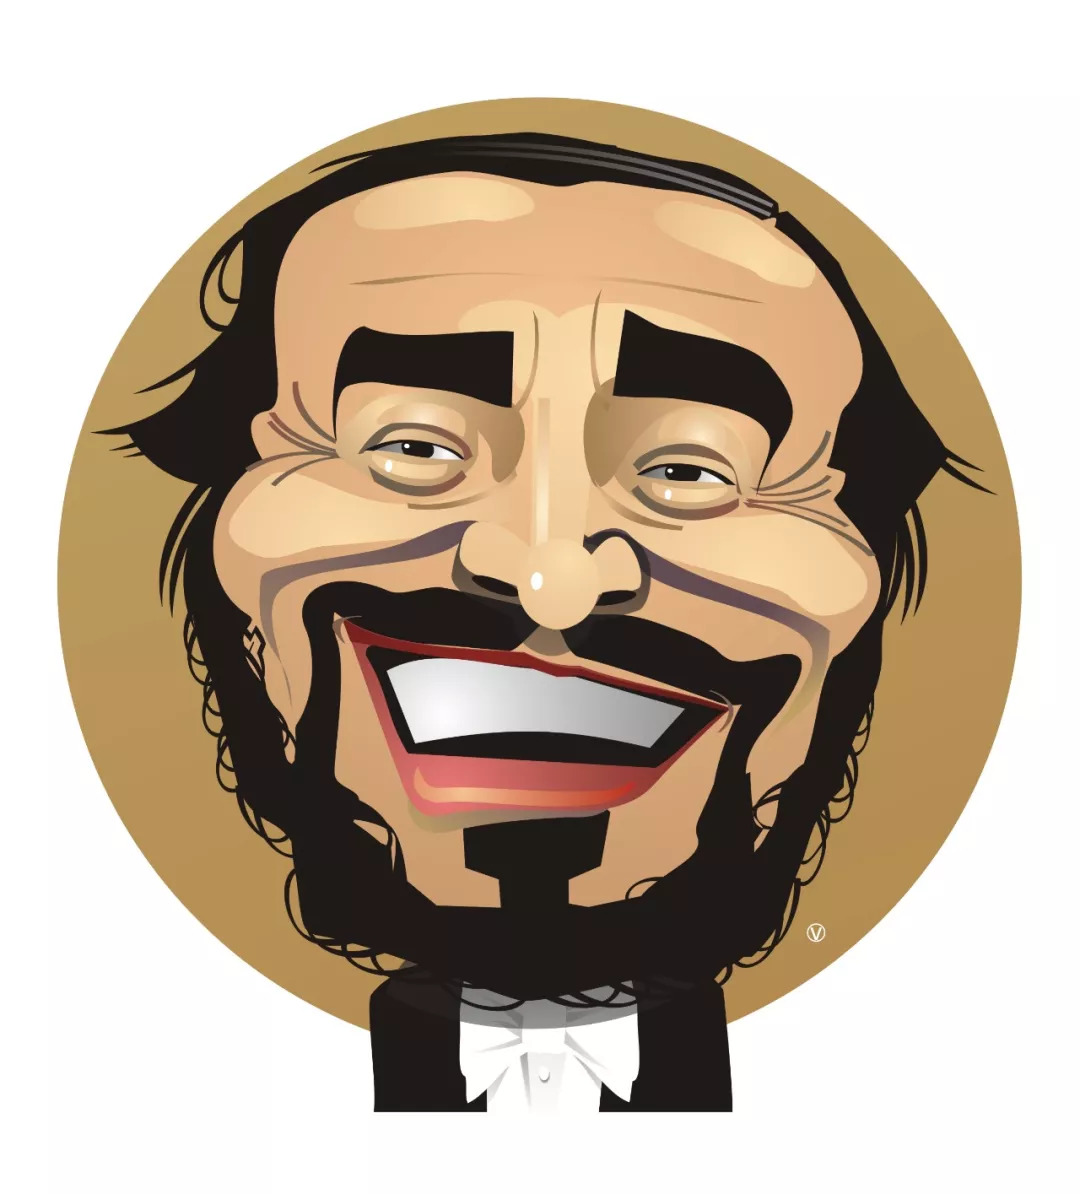 鲁契亚诺·帕瓦罗蒂 :luciano pavarotti,1935年-2007年9月6日,世界